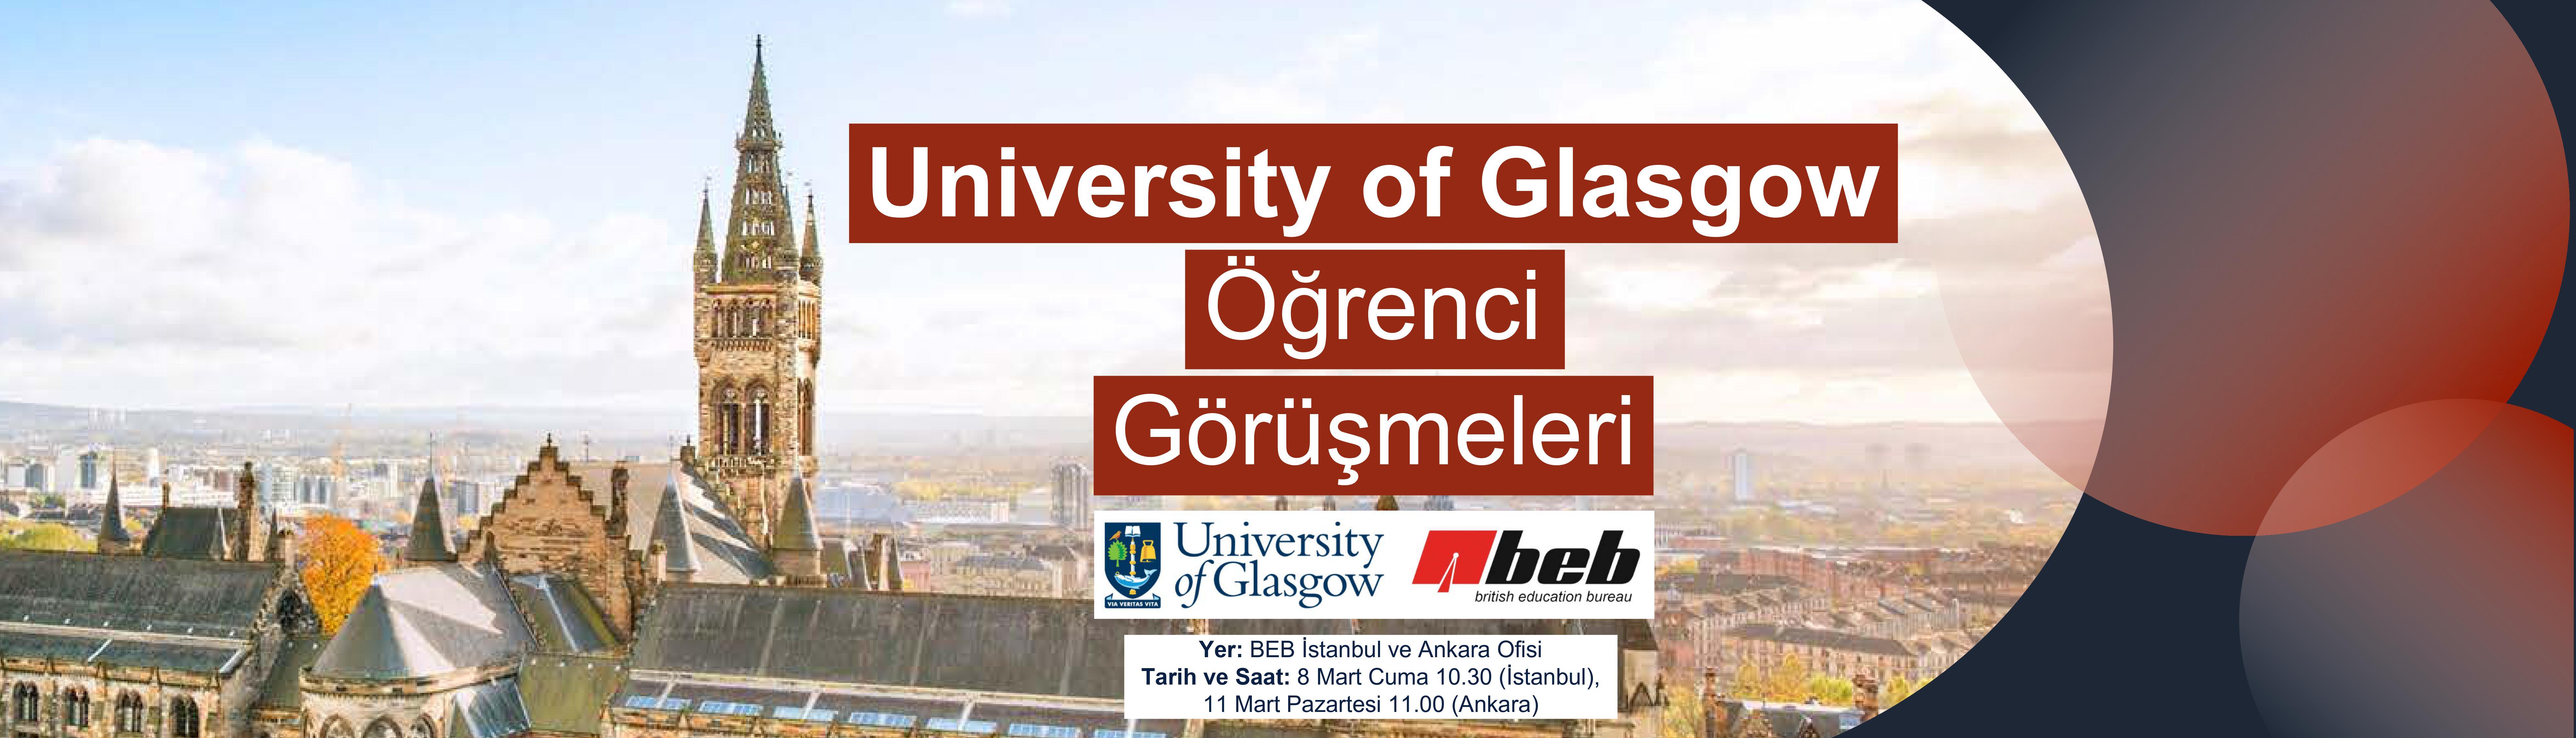 BEB-Ofislerinde-University-of-Glasgow-Ogrenci-Gorusmeleri